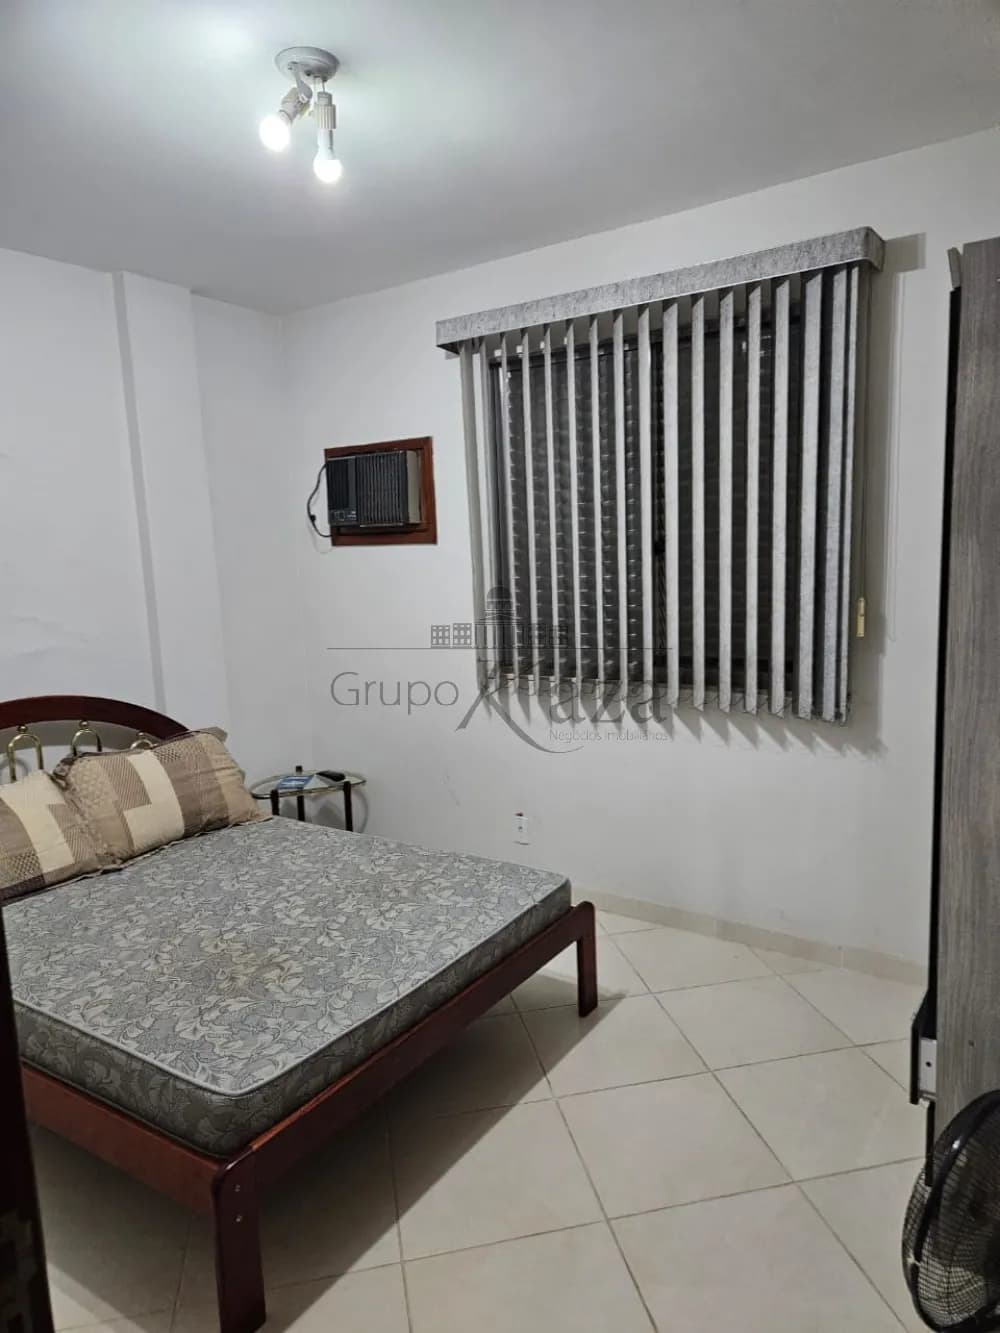 Foto 7 de Apartamento Padrão em Itaguá, Ubatuba - imagem 7